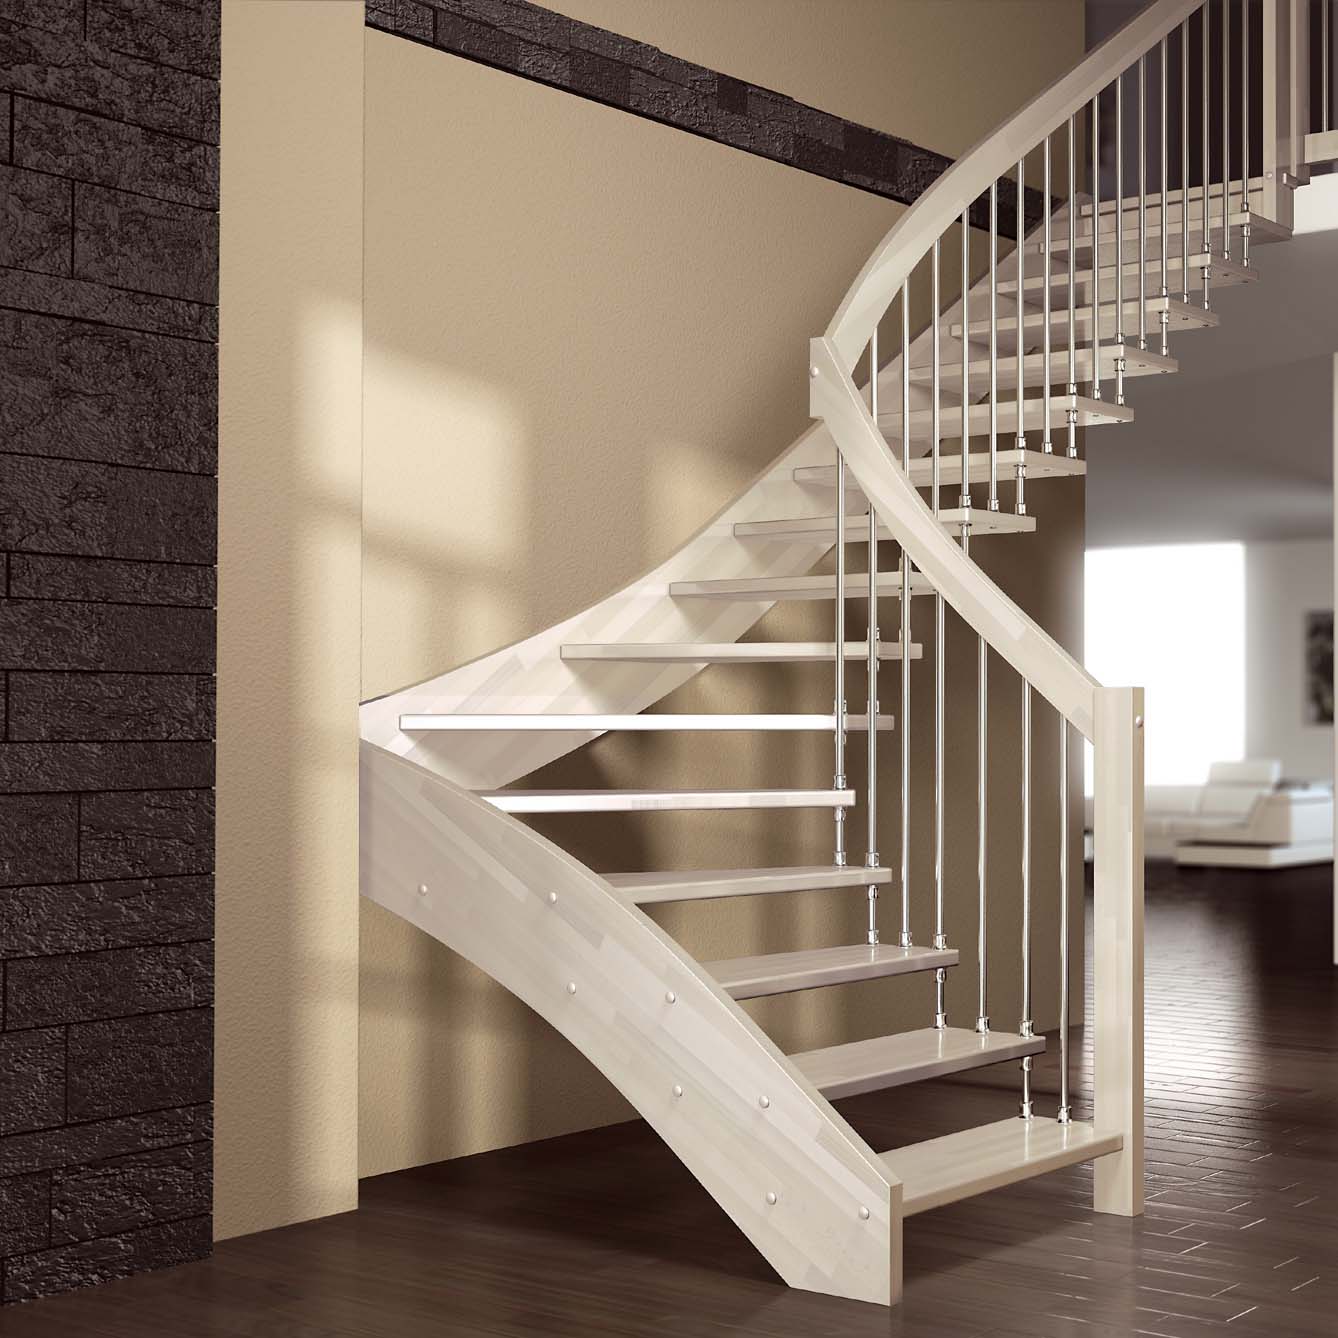 Τα καλύτερα μοντέλα σκαλοπατιών σε εξοχική κατοικία ή διαμέρισμα στον δεύτερο όροφο